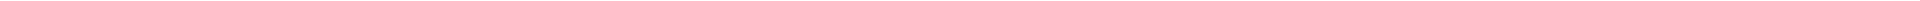 Лечение десен - цены в Астане (Нур-Султан), Алматы, Атырау, Усть-Каменогорск, Уральск, Кокшетау в Казахстане, фото 14